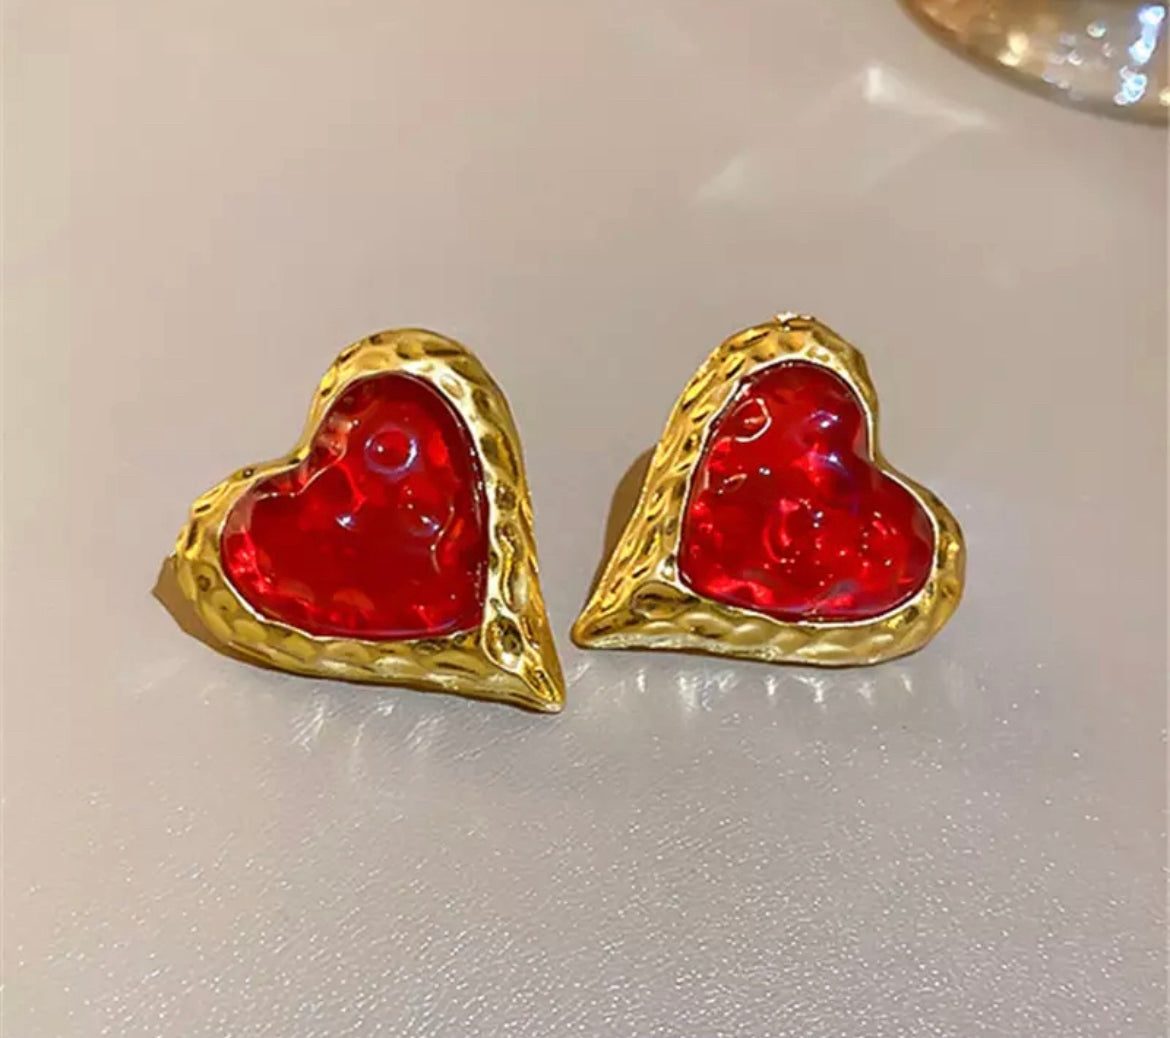 Red heart earrings